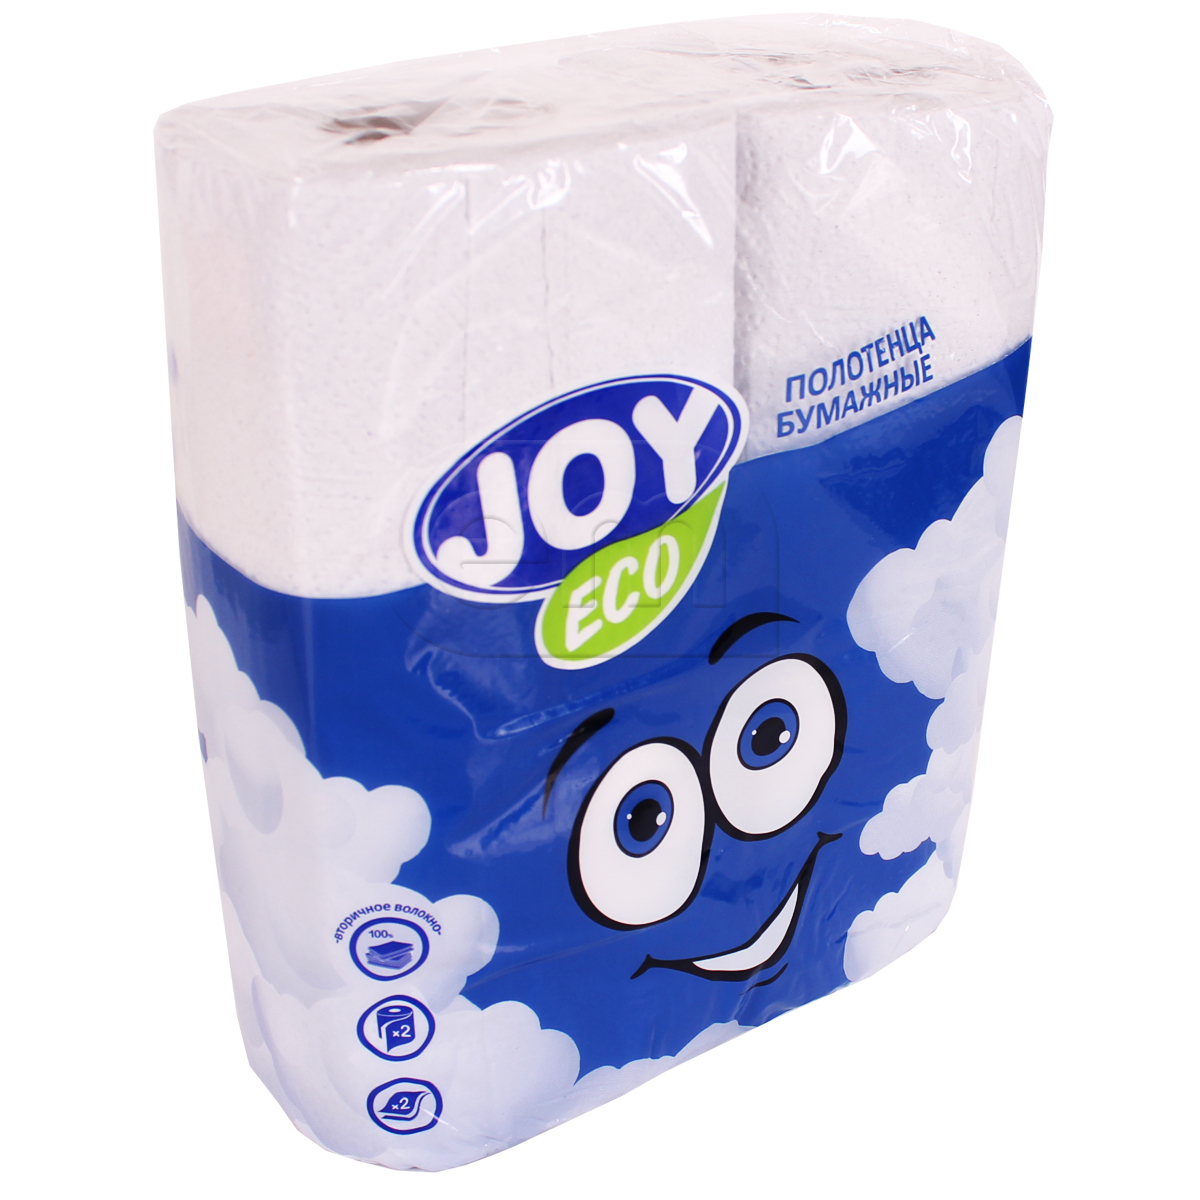 Бумажные полотенца в рул. 2-сл "Joy eco"/Snow lama 2шт